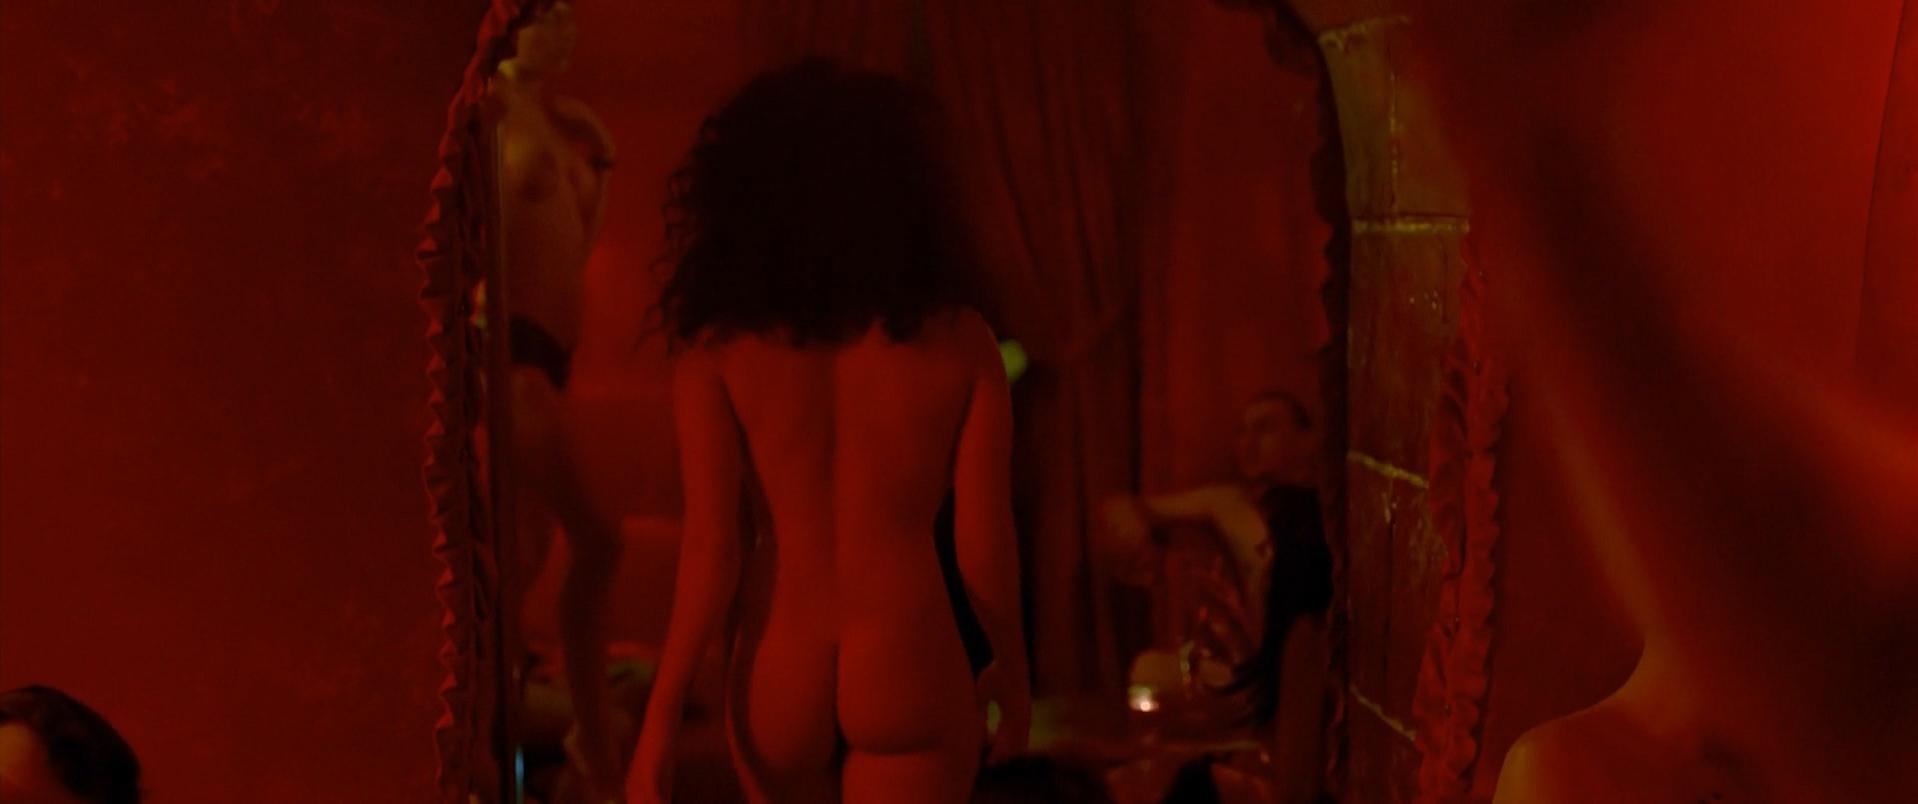 Sabrina Ouazani nude - De l'autre cote du periph (2012)